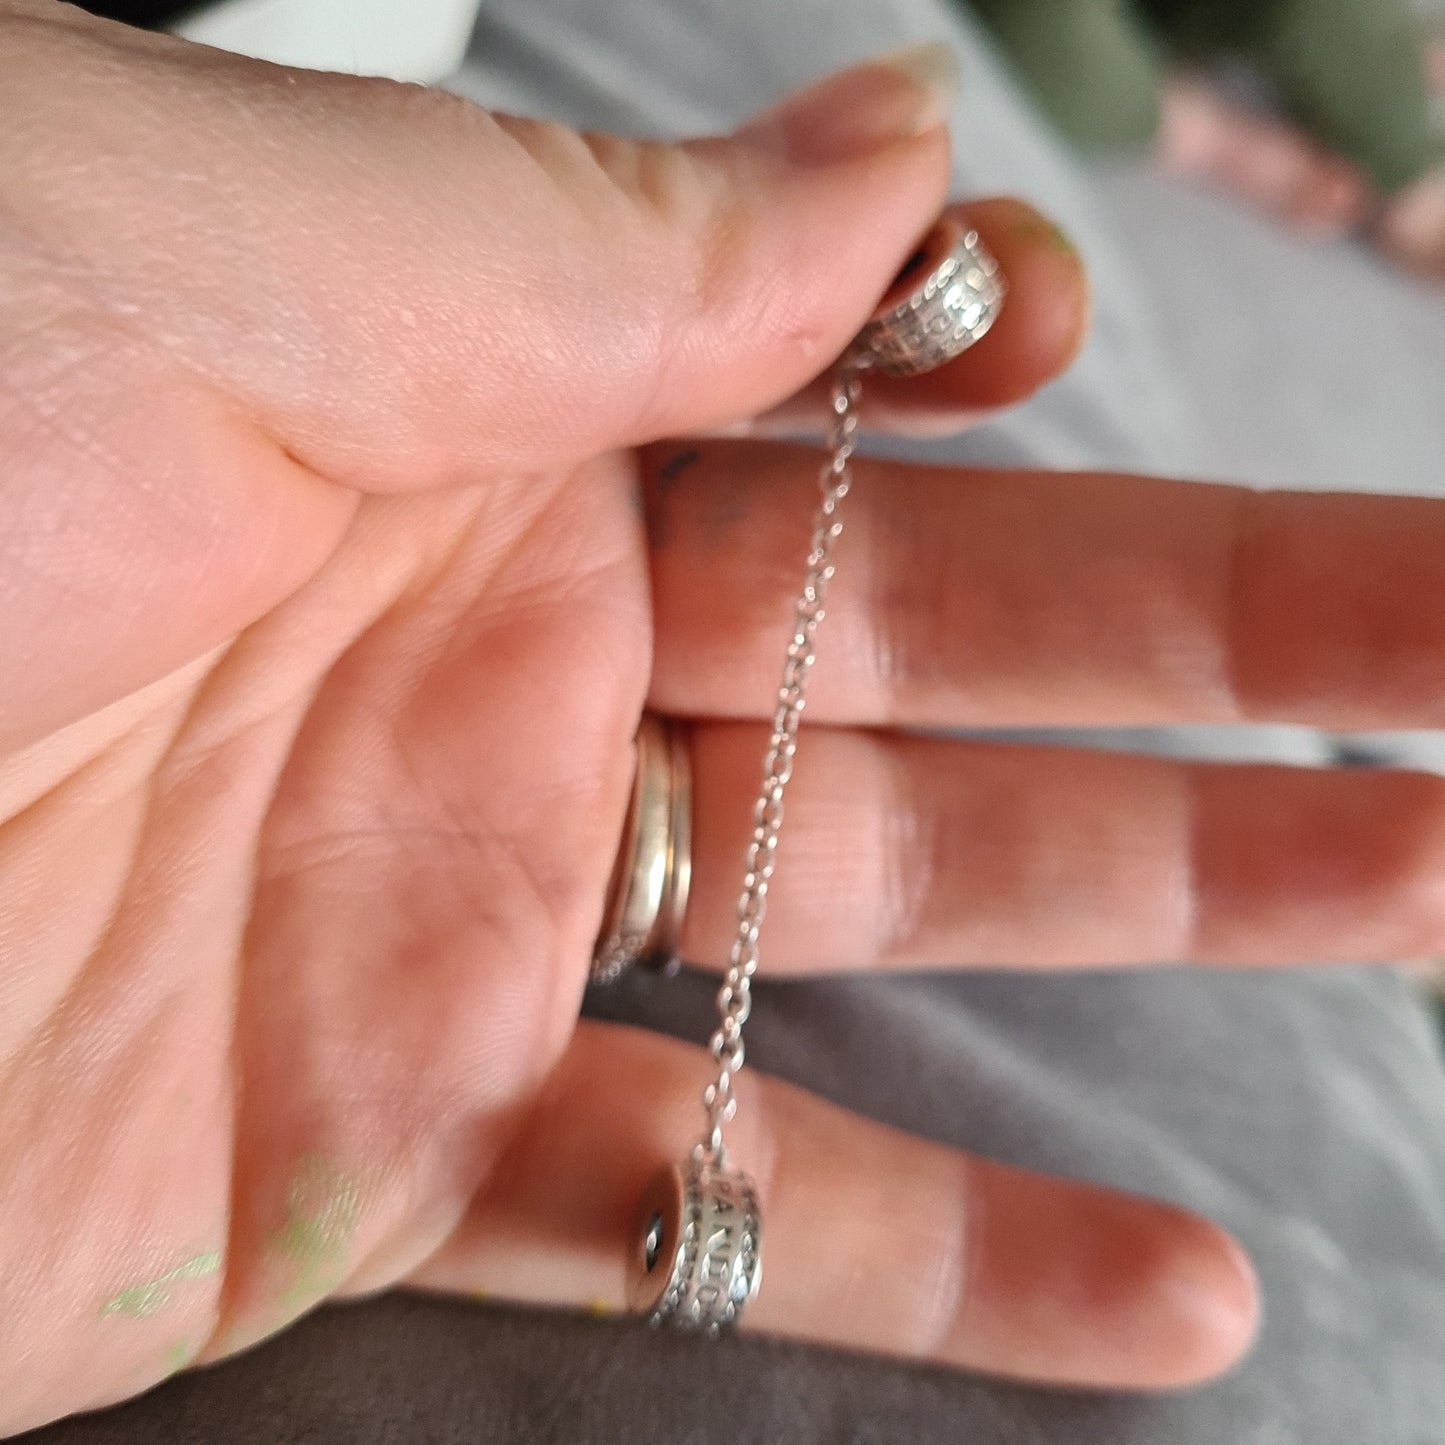 Genuine Pandora Silver Clip Safety Chain